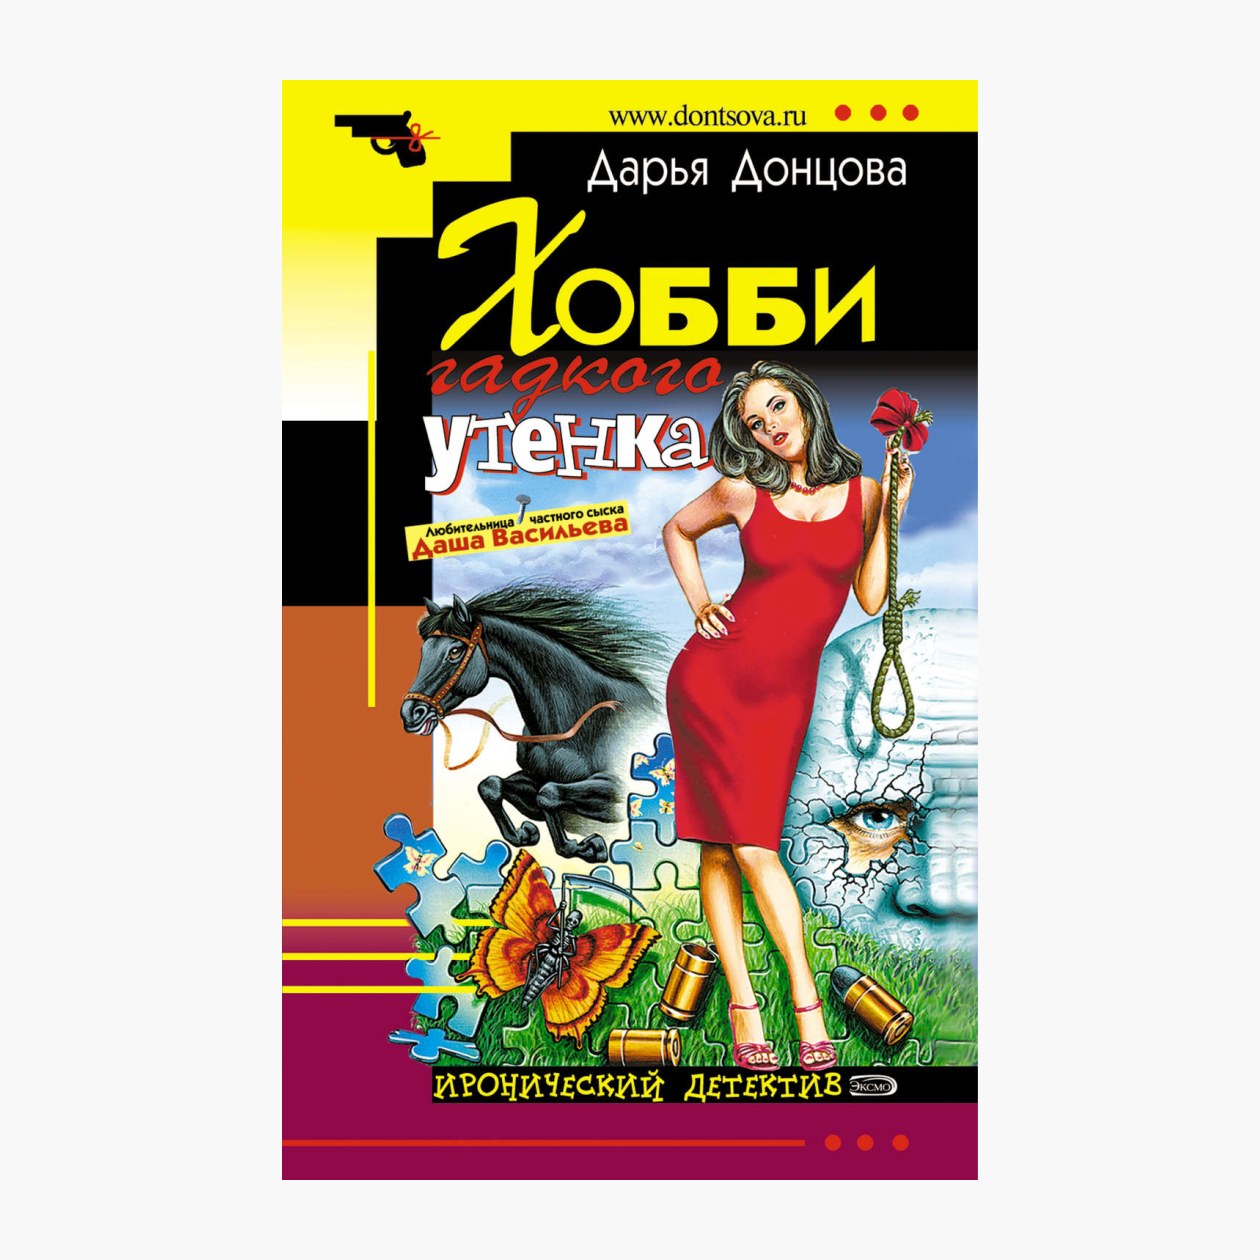 Обложки первых изданий «Тани Гроттер» похожи на книги Донцовой. Издательство: «Эксмо»